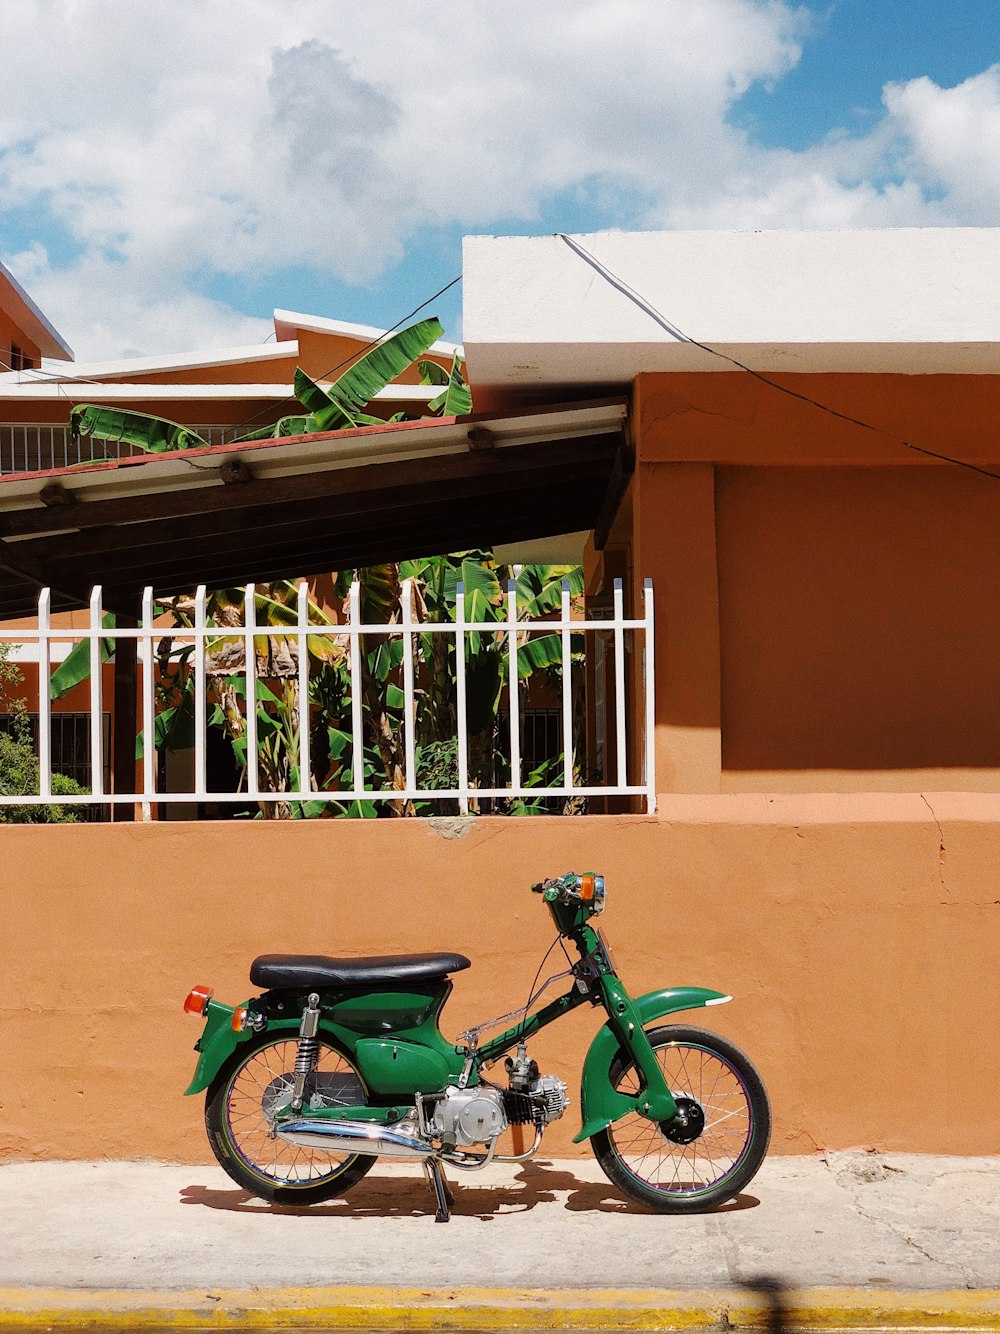 Motocicleta verde y negra estacionada junto a un edificio de concreto marrón durante el día